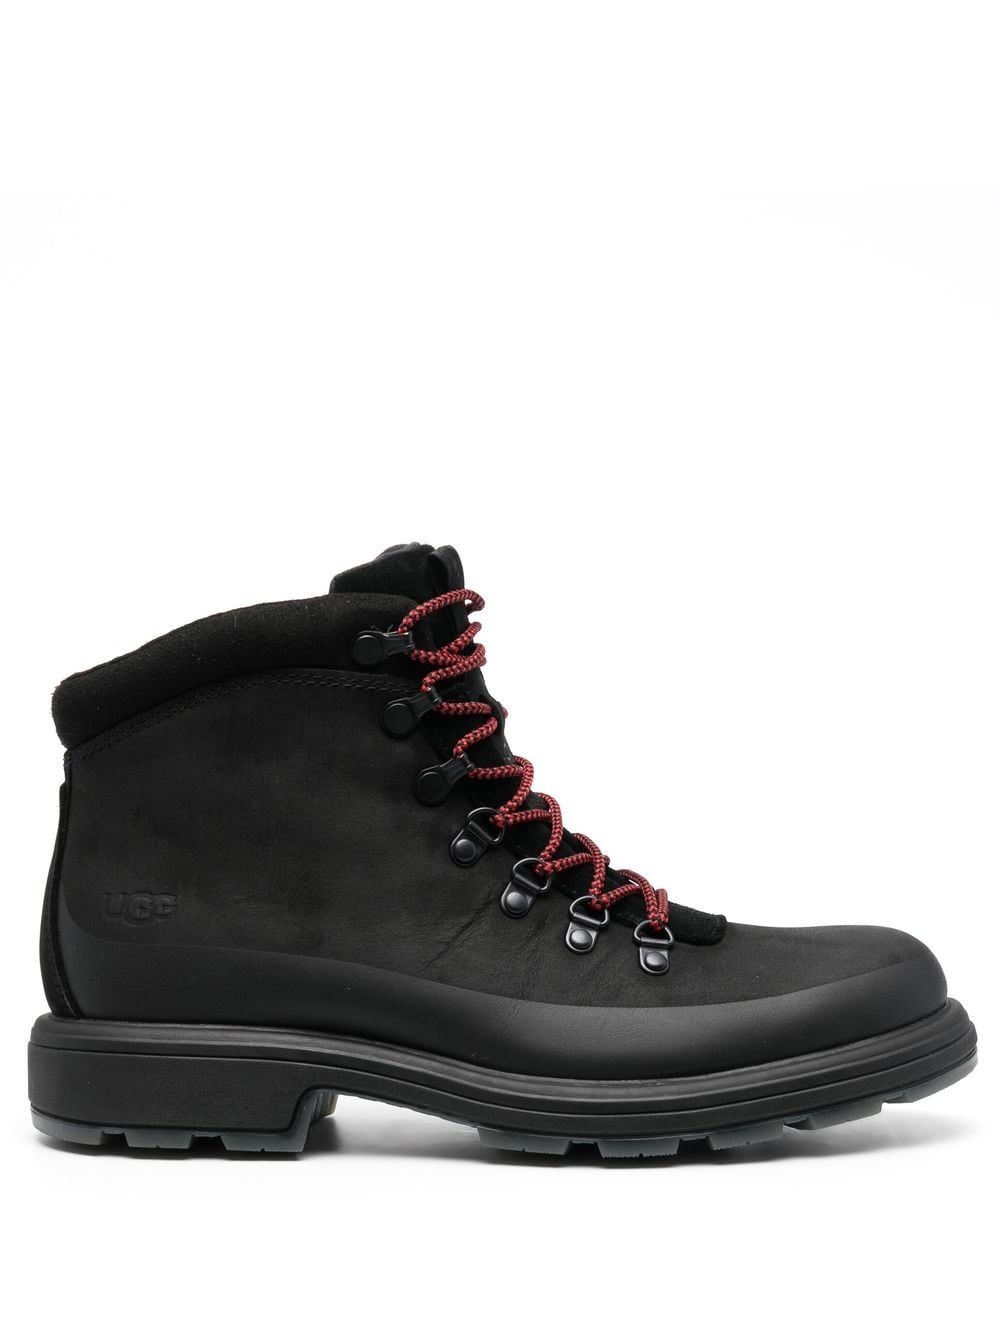 UGG Biltmore hiker boots - Black von UGG